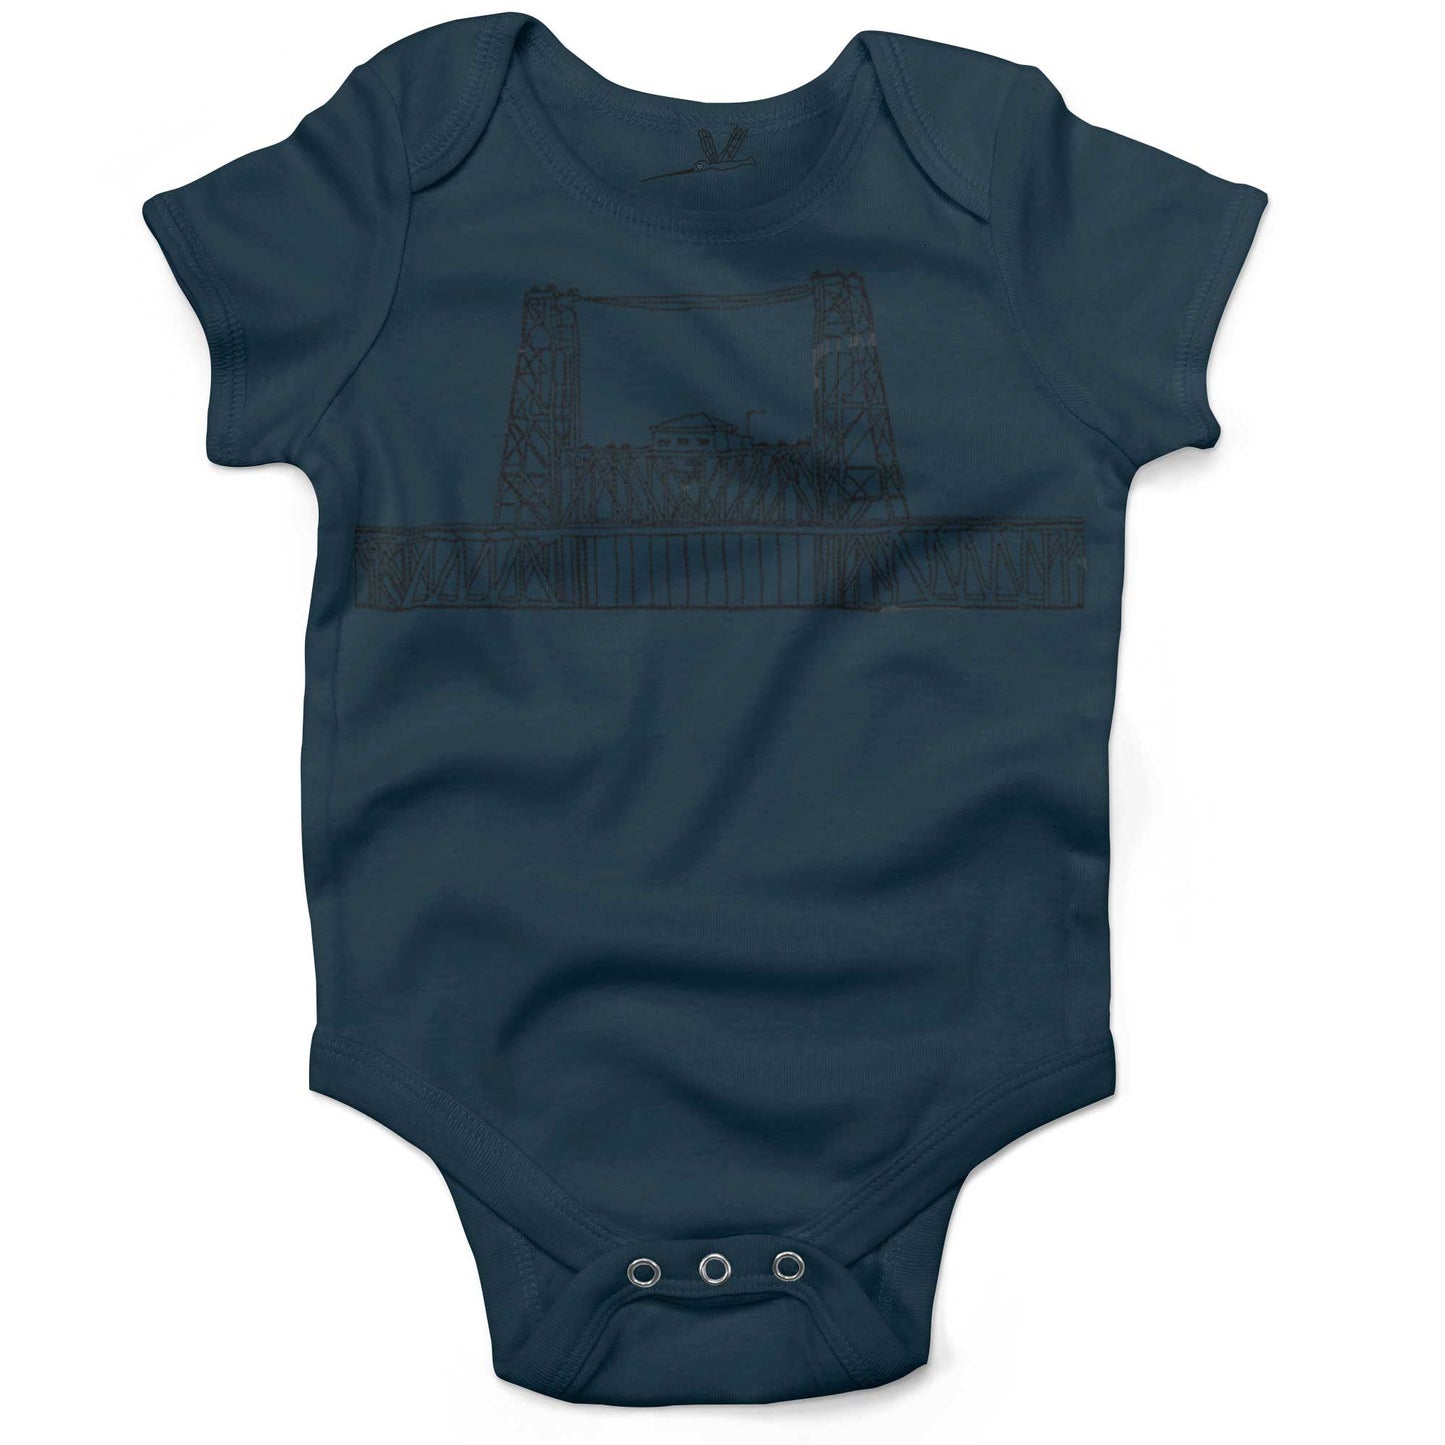 Steel Bridge Infant Bodysuit or Raglan Baby Tee-Organic Pacific Blue-3-6 months